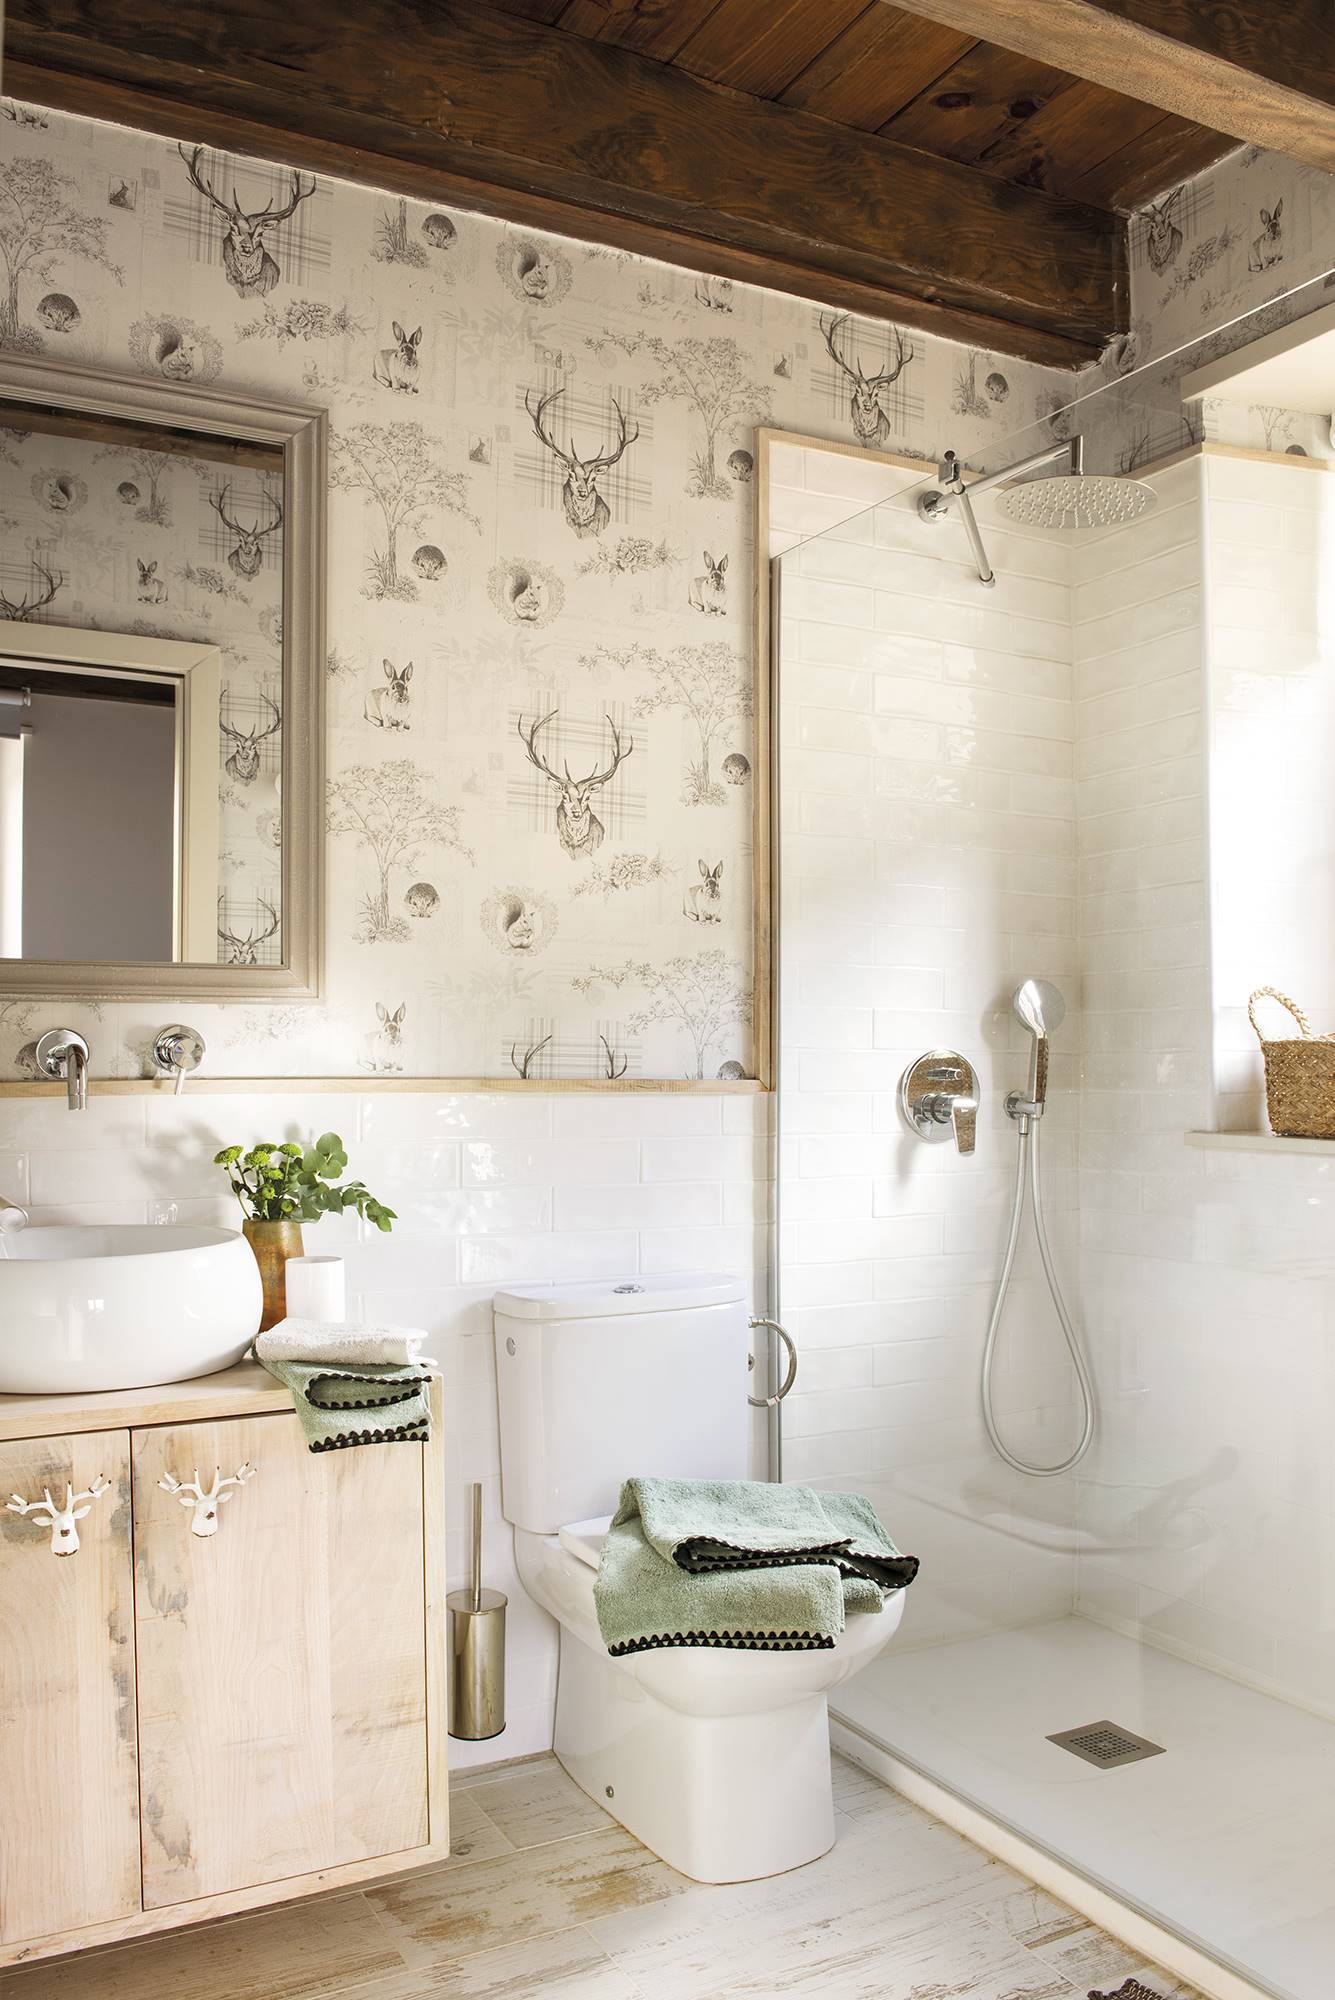 Baño rústico con revestimiento de azulejos blancos y papel pintado. 